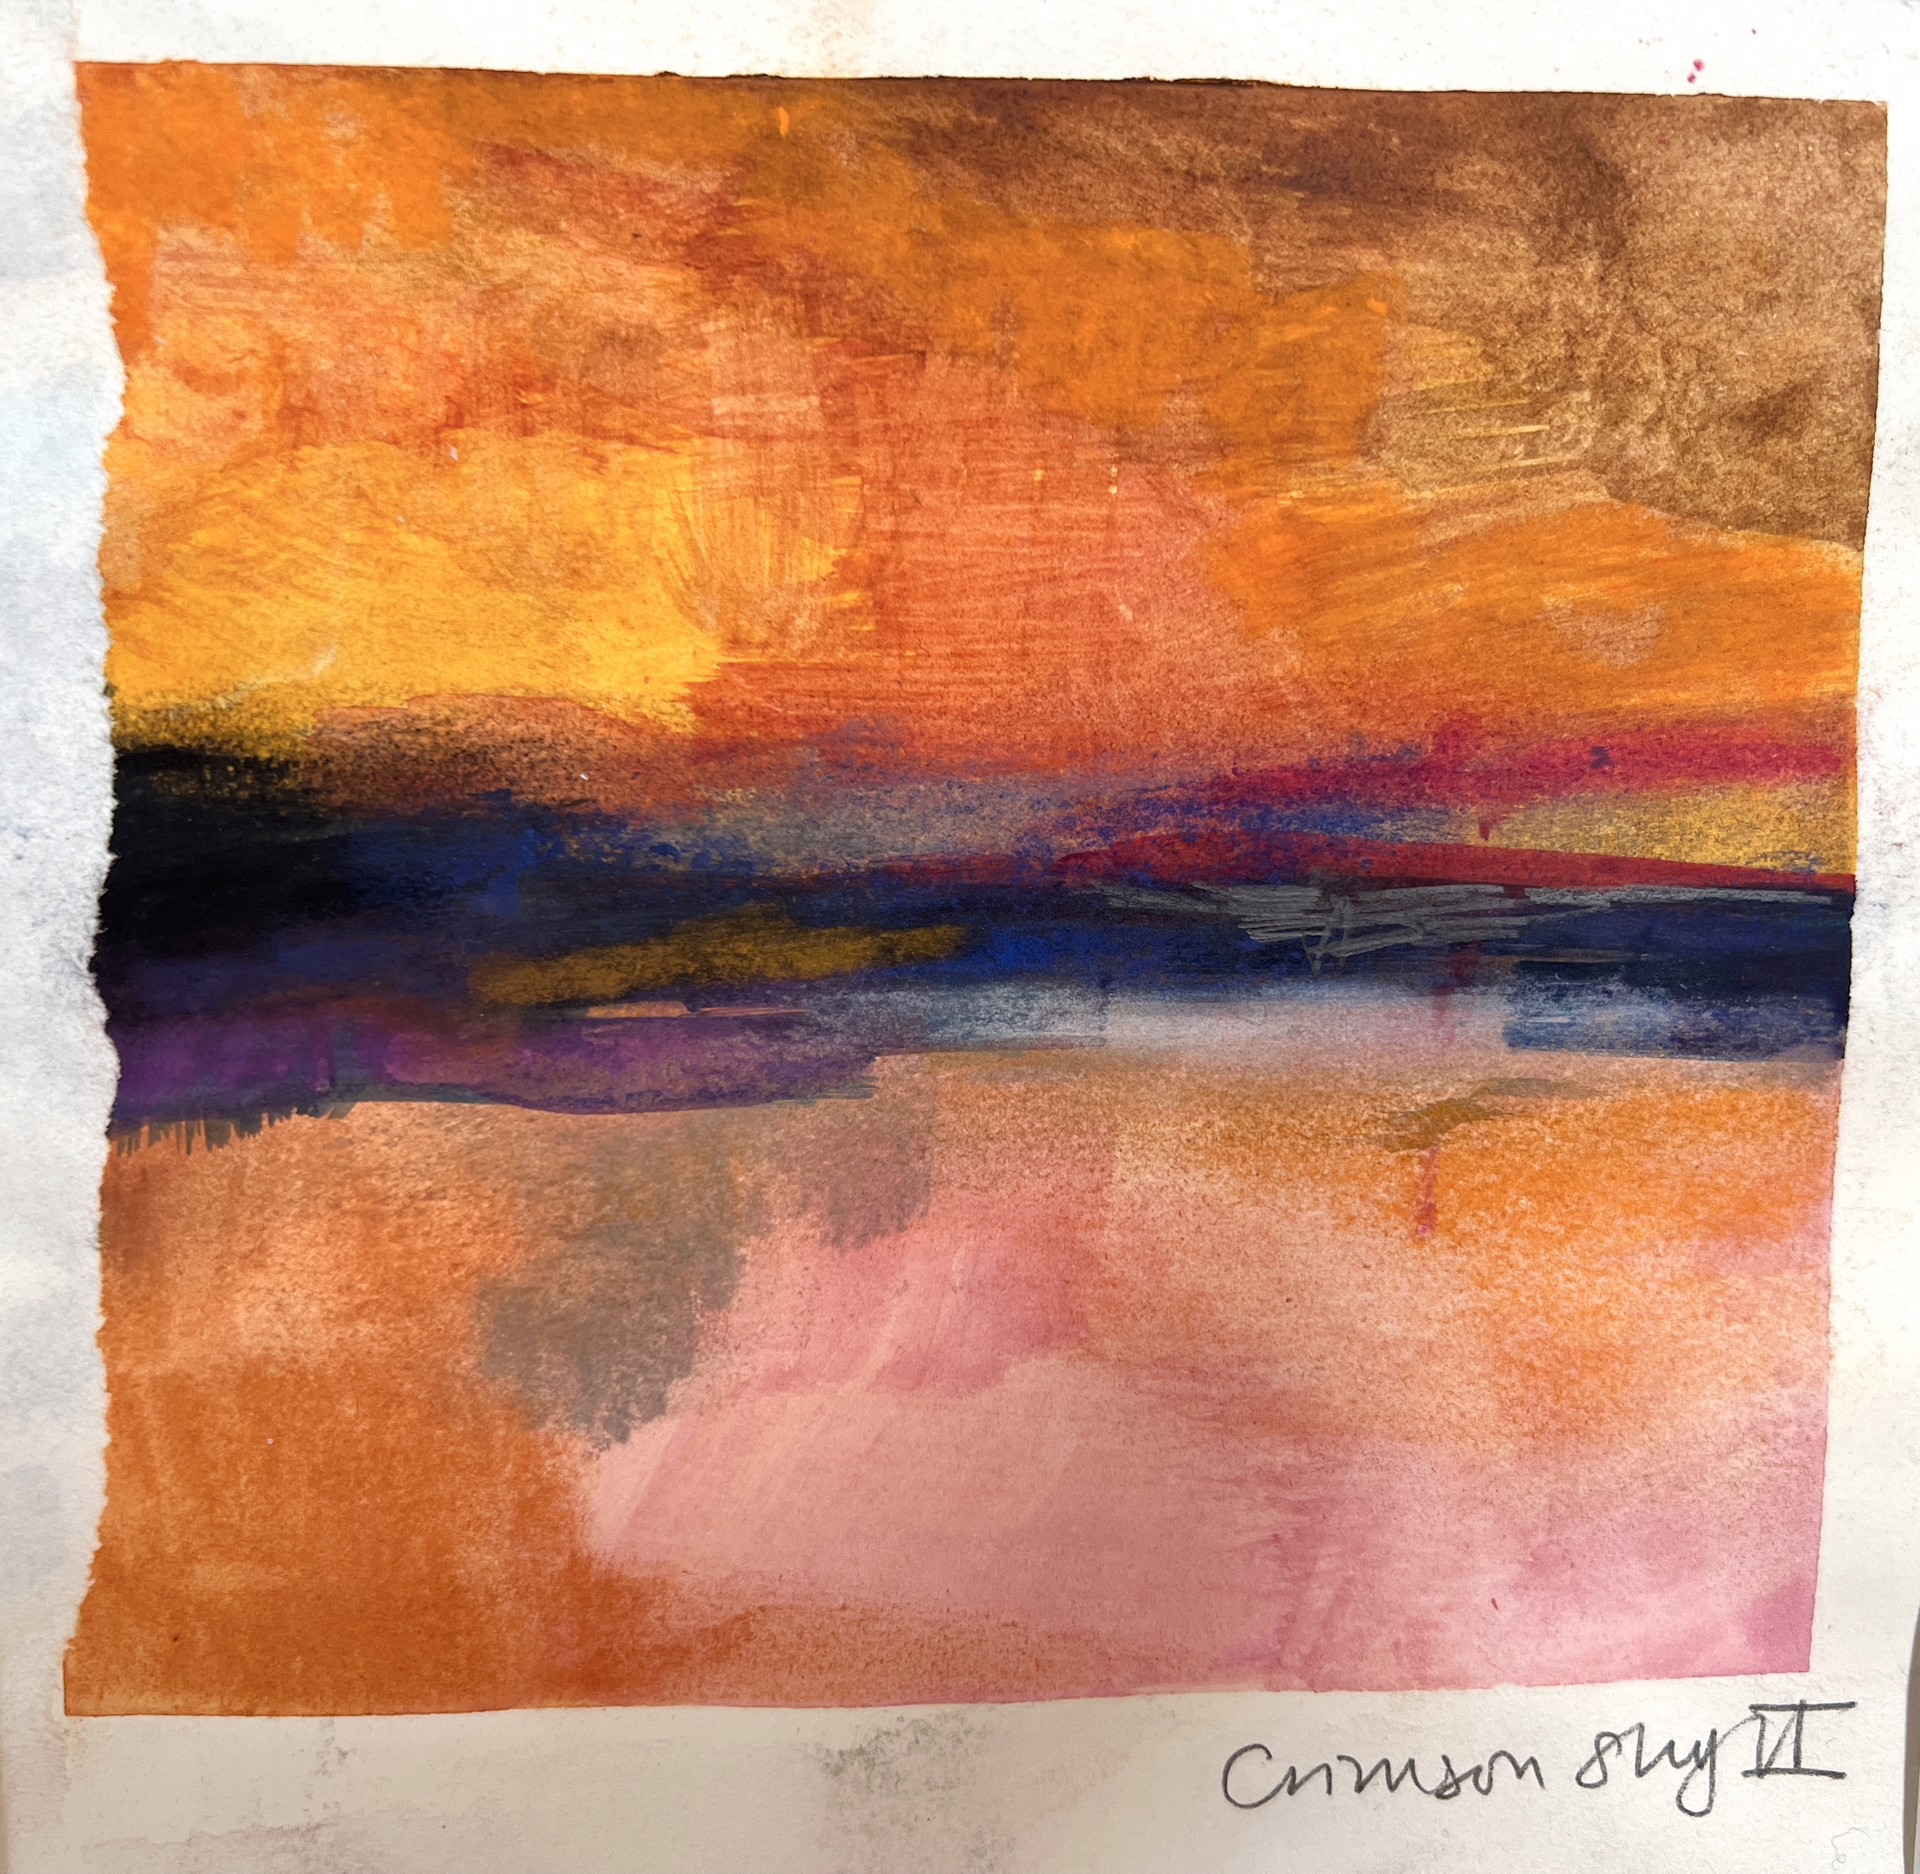 Crimson Sky II by Jane Kell